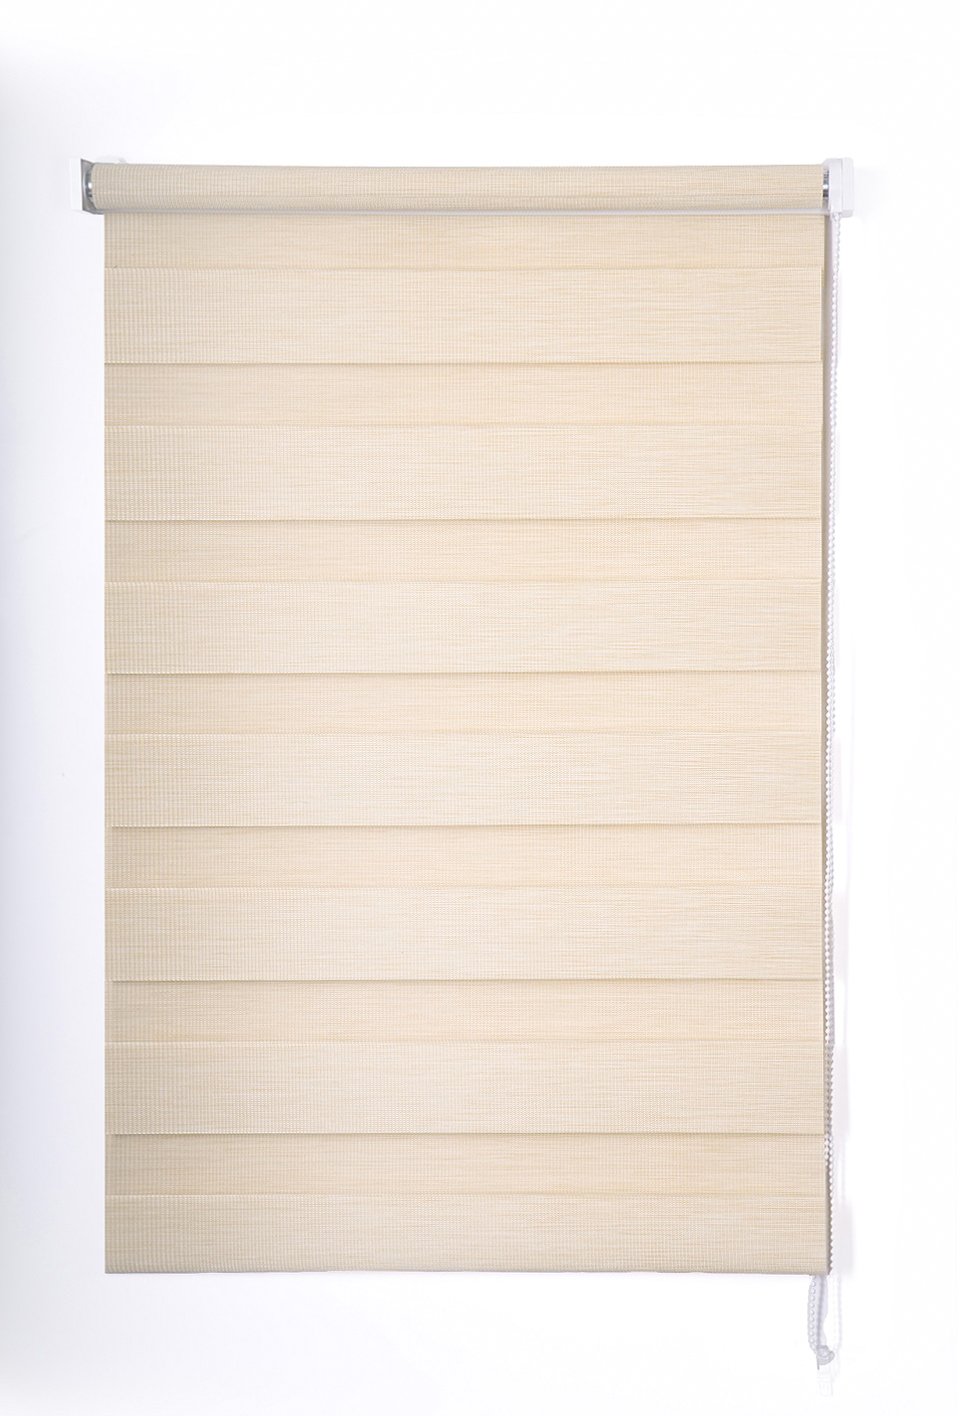 Klasikinė ritininė užuolaida VERONA D&N, smėlio sp., 100 x 170 cm, 100 % poliesteris